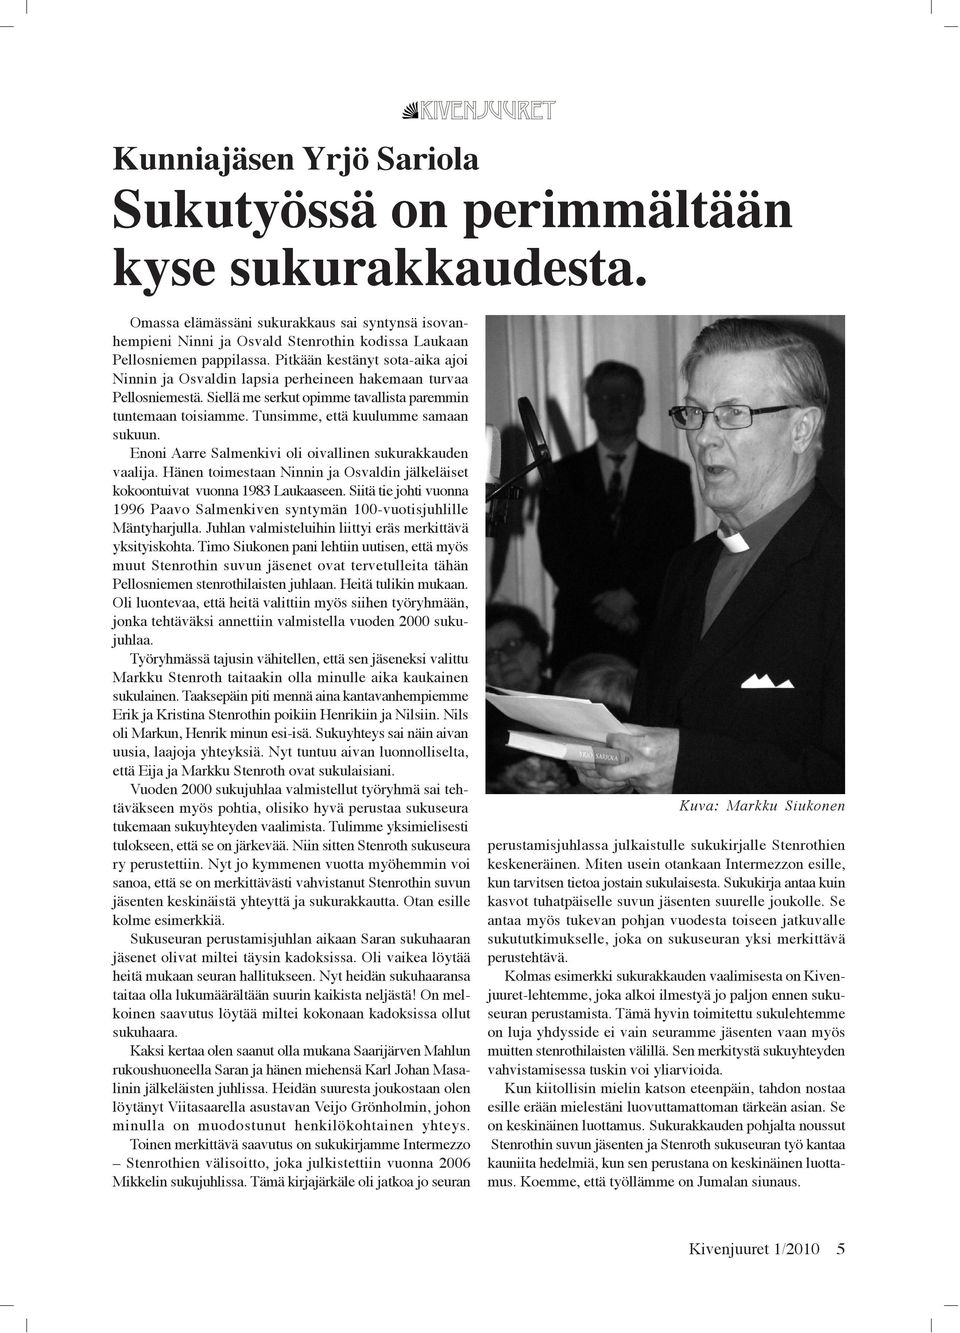 Tunsimme, että kuulumme samaan sukuun. Enoni Aarre Salmenkivi oli oivallinen sukurakkauden vaalija. Hänen toimestaan Ninnin ja Osvaldin jälkeläiset kokoontuivat vuonna 1983 Laukaaseen.